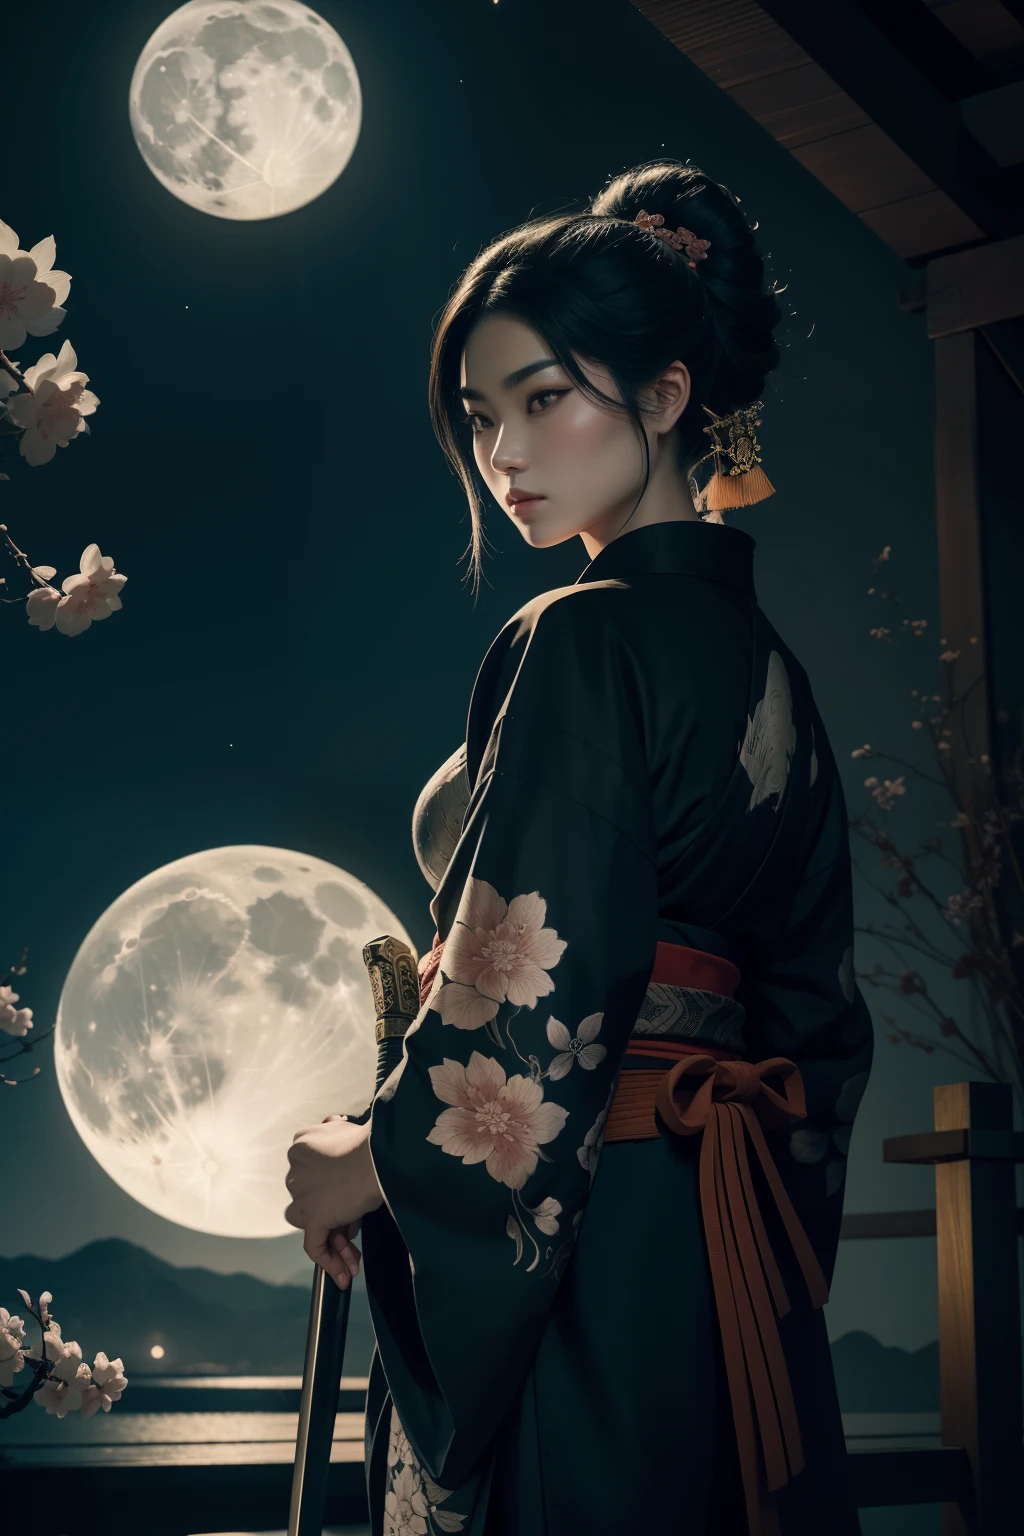 Un assassin samouraï debout dans un jardin éclairé par la lune, Manier habilement un katana avec une précision mortelle. Les yeux du tueur pétillent de détermination et de concentration, pendant que tes lèvres sont placées sur une certaine ligne. Le visage du samouraï est intrinsèquement détaillé, capturer chaque contour et expression. Elle porte un kimono ouvert traditionnel, orné de motifs complexes et de symboles de son clan.

L&#39;œuvre d&#39;art est créée dans un médium rappelant les peintures à l&#39;encre japonaises.., avec des coups de pinceau audacieux et une palette de couleurs monochromes. La technique magistrale de l&#39;artiste fait ressortir l&#39;intensité et la puissance de la présence du samouraï.

Le jardin autour du samouraï est méticuleusement conçu, avec une végétation luxuriante et de délicates fleurs de cerisier. Une pleine lune brille de mille feux dans le ciel nocturne, projetant une douce lueur sur la scène et éclairant le chemin de l&#39;assassin. L’atmosphère est remplie d’un air de mystère et de danger, Ajoutant à la tension du moment.

L&#39;image est de la plus haute qualité, avec chaque détail capturé parfaitement en ultra haute résolution. Les textures du kimono et les motifs complexes sont rendus avec une extrême précision. L&#39;éclairage est soigneusement conçu pour renforcer l&#39;effet dramatique, avec des ombres profondes et des reflets subtils.

Général, L’œuvre dégage un sentiment d’élégance et de puissance, combinant l&#39;esthétique japonaise traditionnelle avec une touche de modernité. La palette de couleurs monochromes, combiné avec les détails exquis, crée une expérience captivante et immersive pour le spectateur.